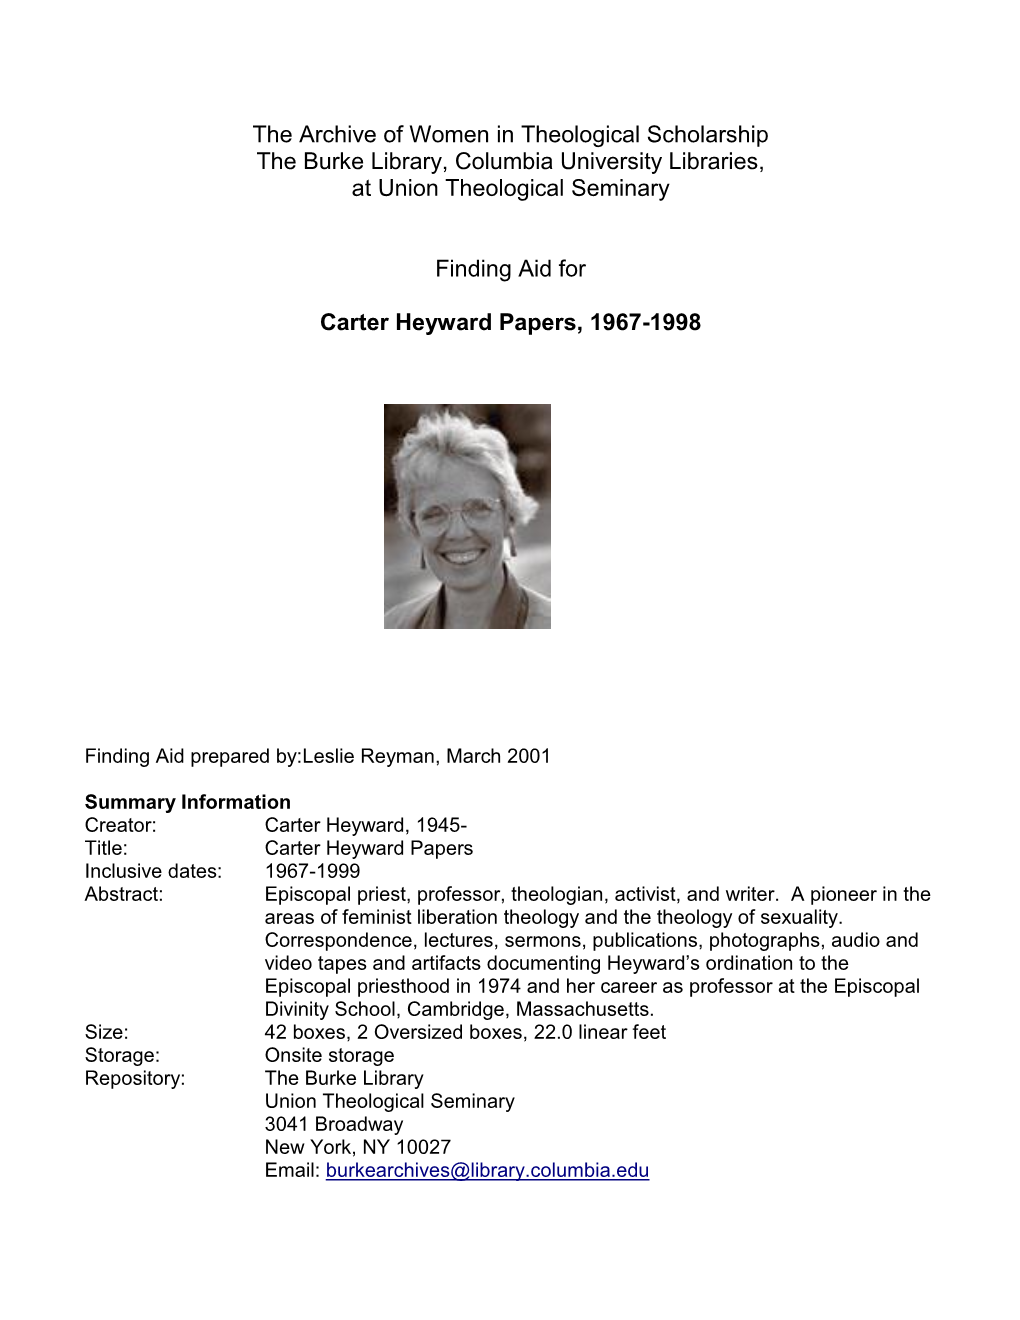 Carter Heyward Papers, 1967-1998